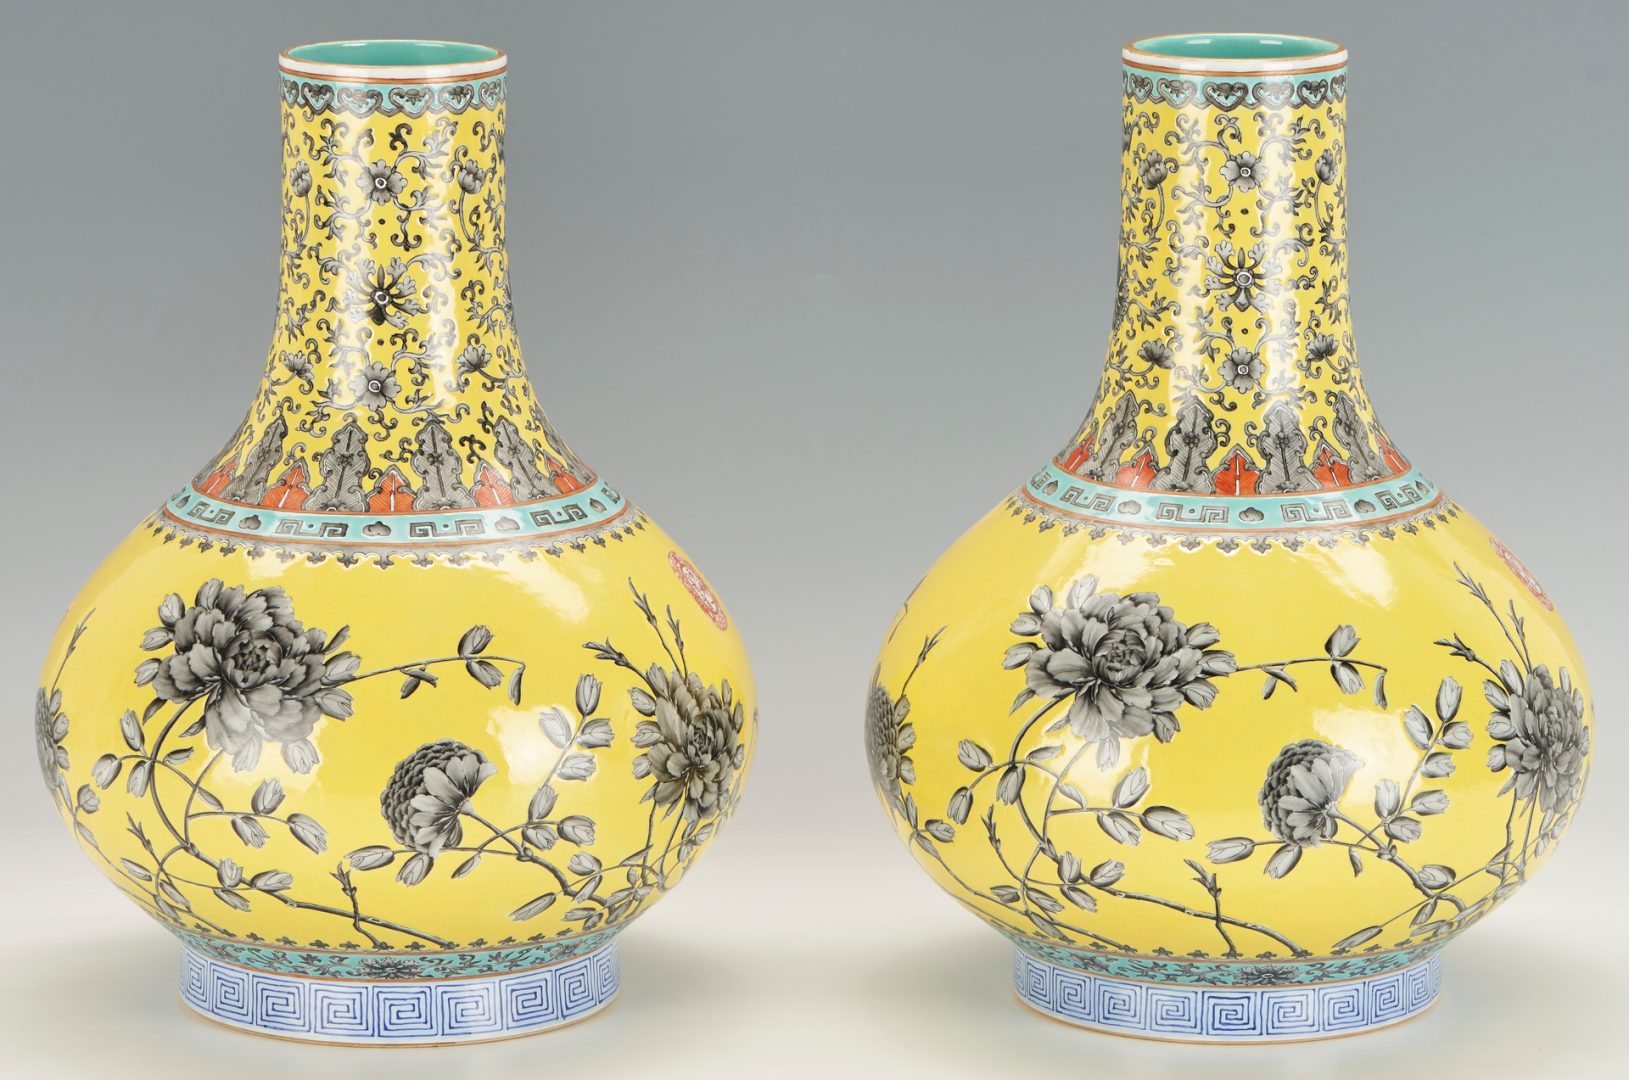 Lot 17: Pair of Chinese Yellow Ground Dayazhai Style Vases